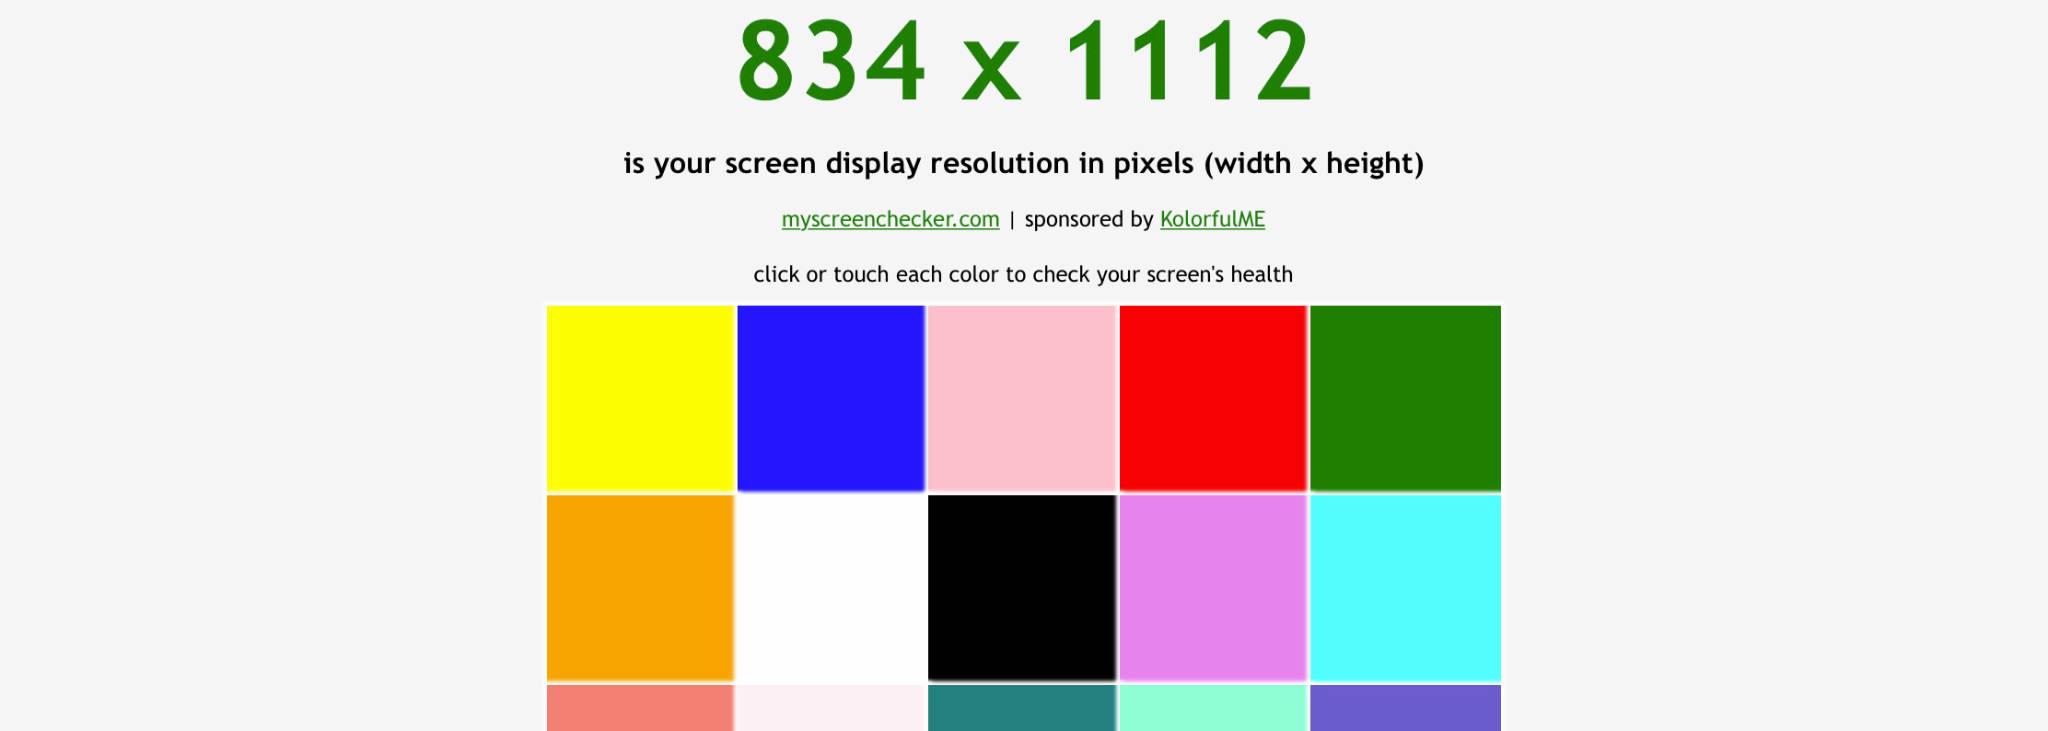 Màu trắng là một trong những màu sắc được sử dụng phổ biến trên trình duyệt web. Để đảm bảo màn hình của bạn hiển thị đúng như mong muốn, hãy xem hình ảnh test màn hình trình duyệt ở chế độ màu trắng để kiểm tra kỹ hơn.